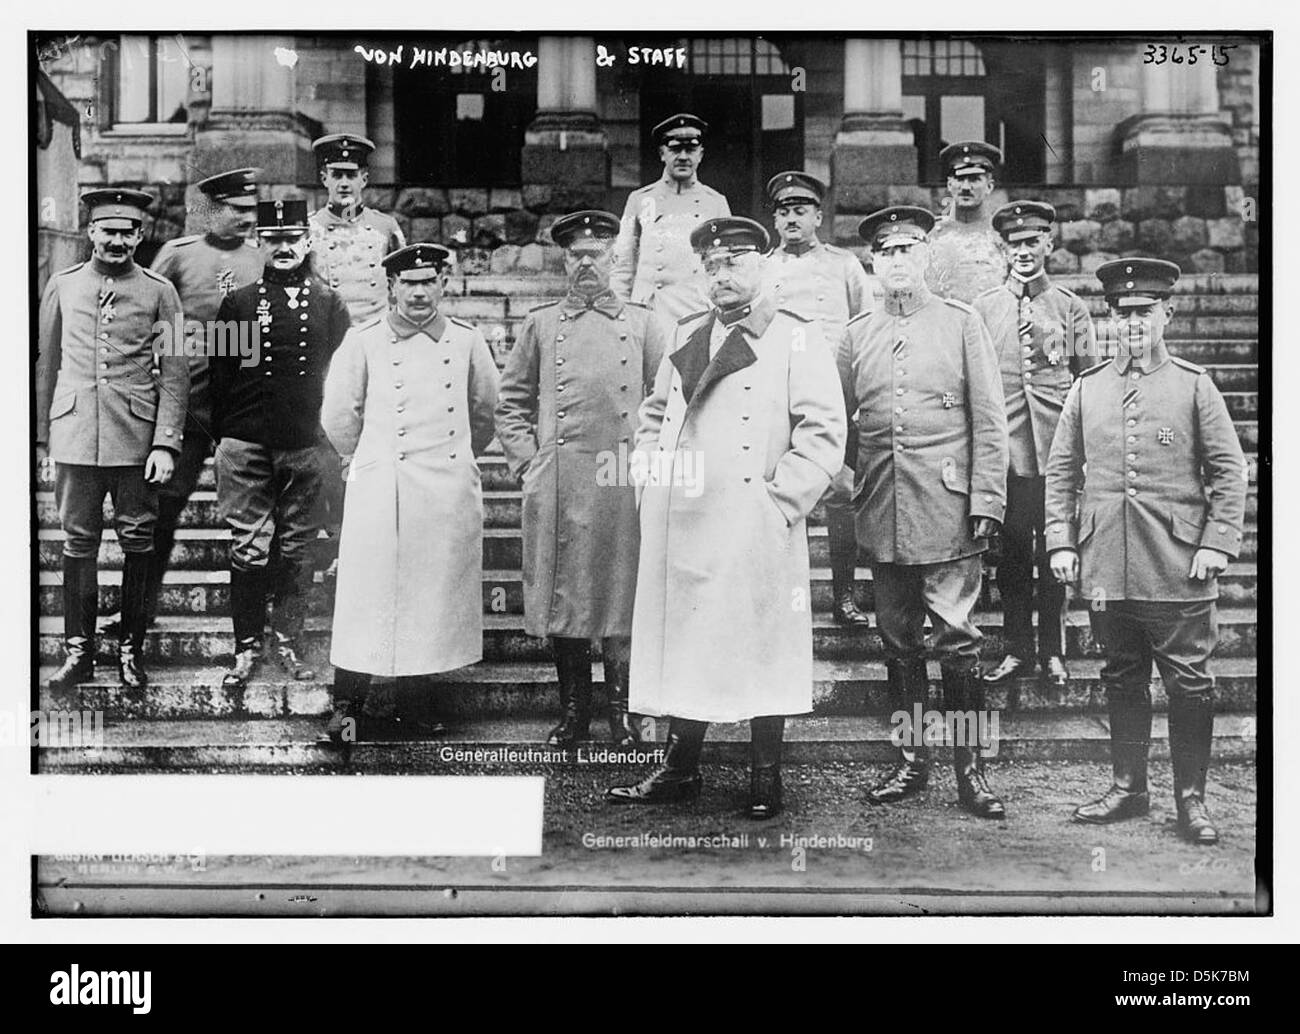 Von Hindenburg and staff (LOC) Stock Photo